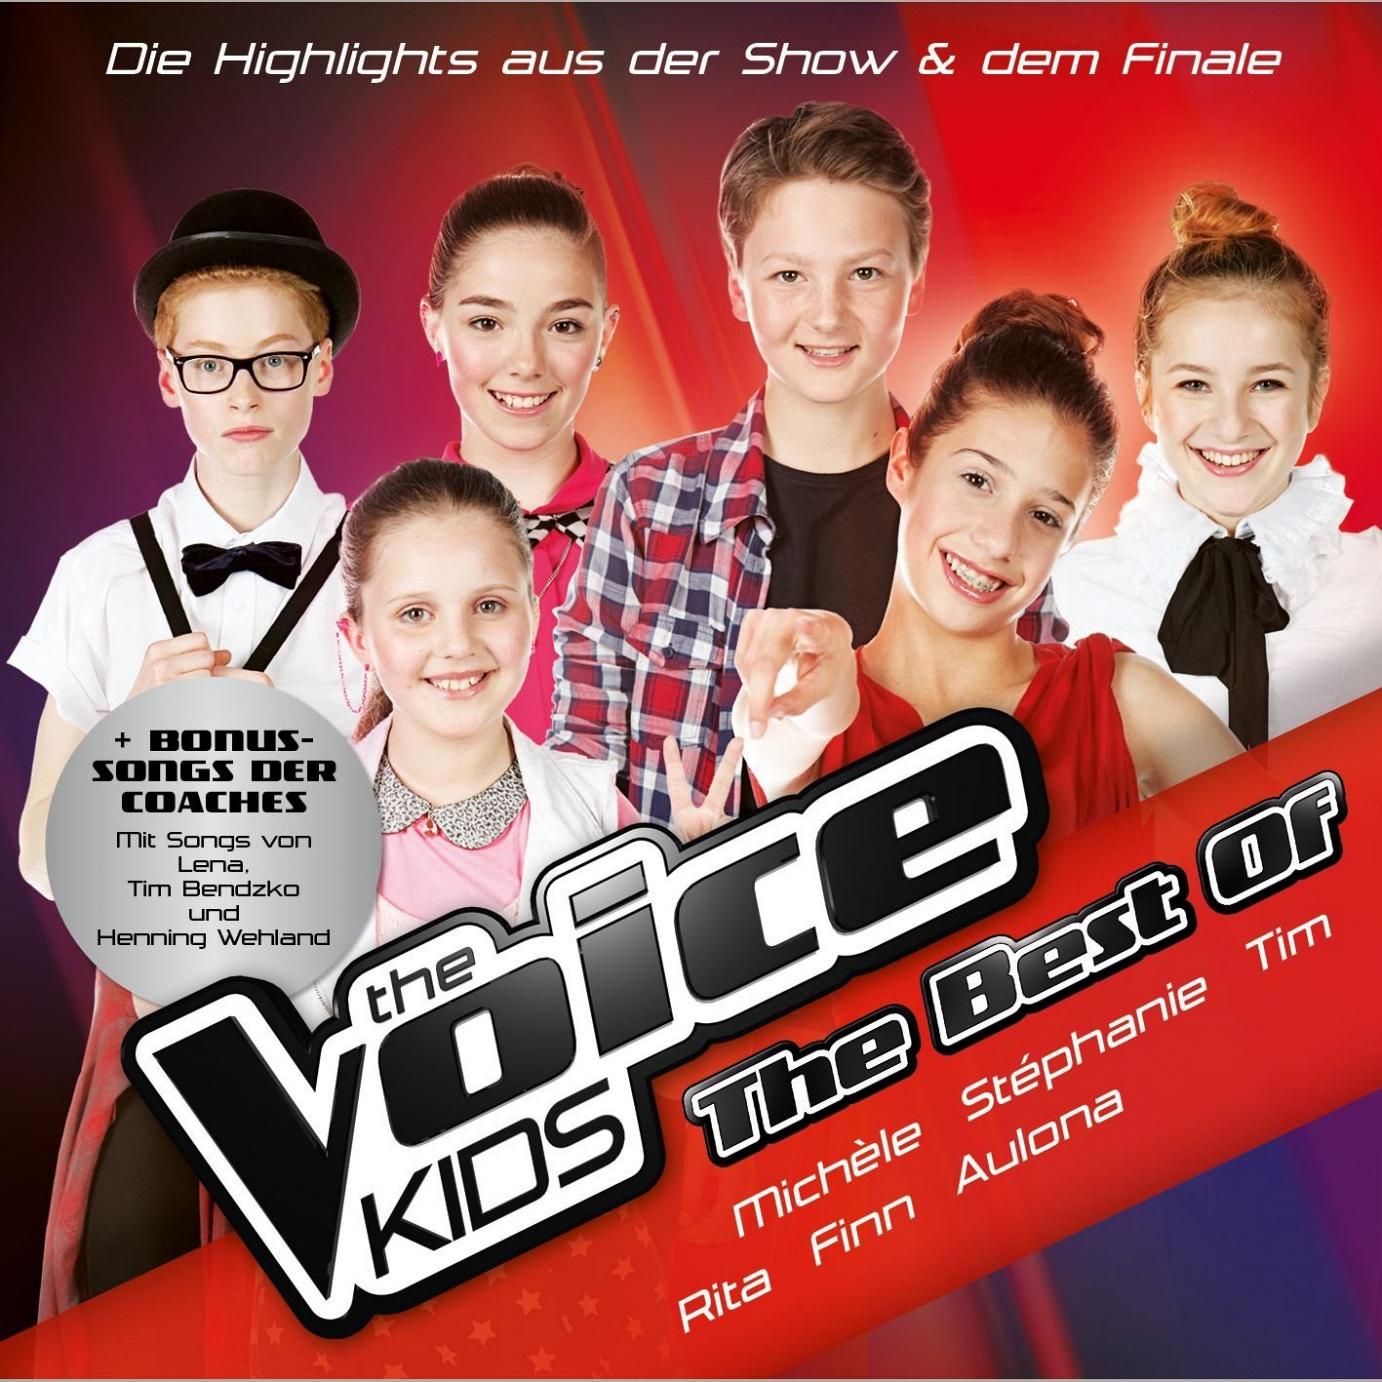 The Voice Kids – The Best Of: Die Finalisten präsentieren die Highlights der Show